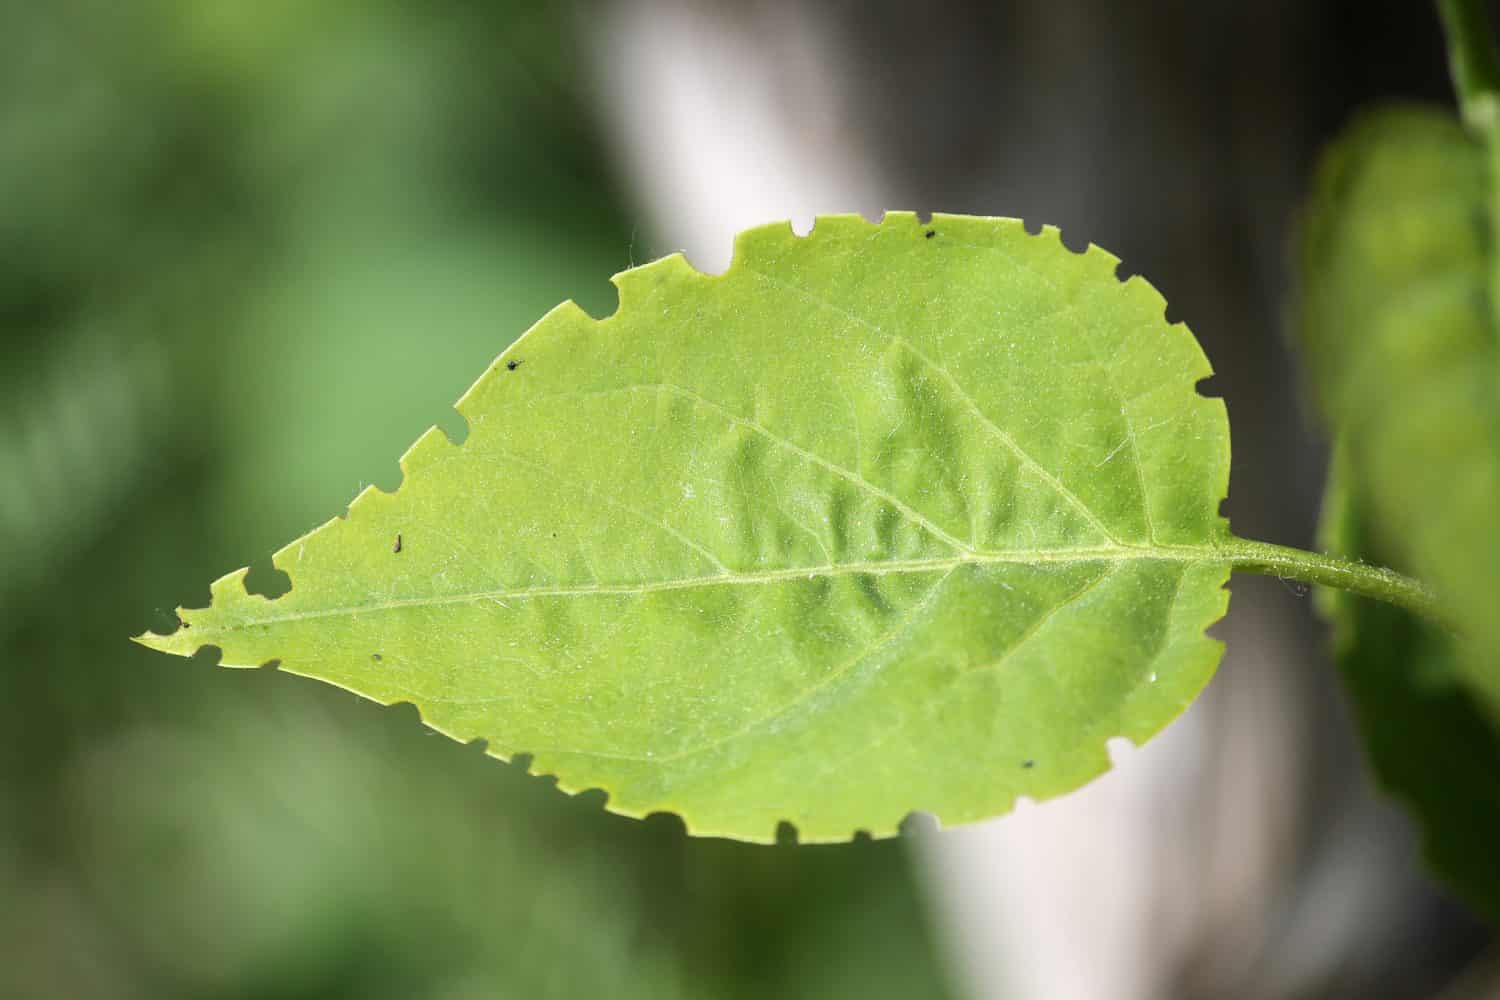 Green lilac leaf eaten by weevil. Weevil feeding damage on foliage of Syringa vulgaris